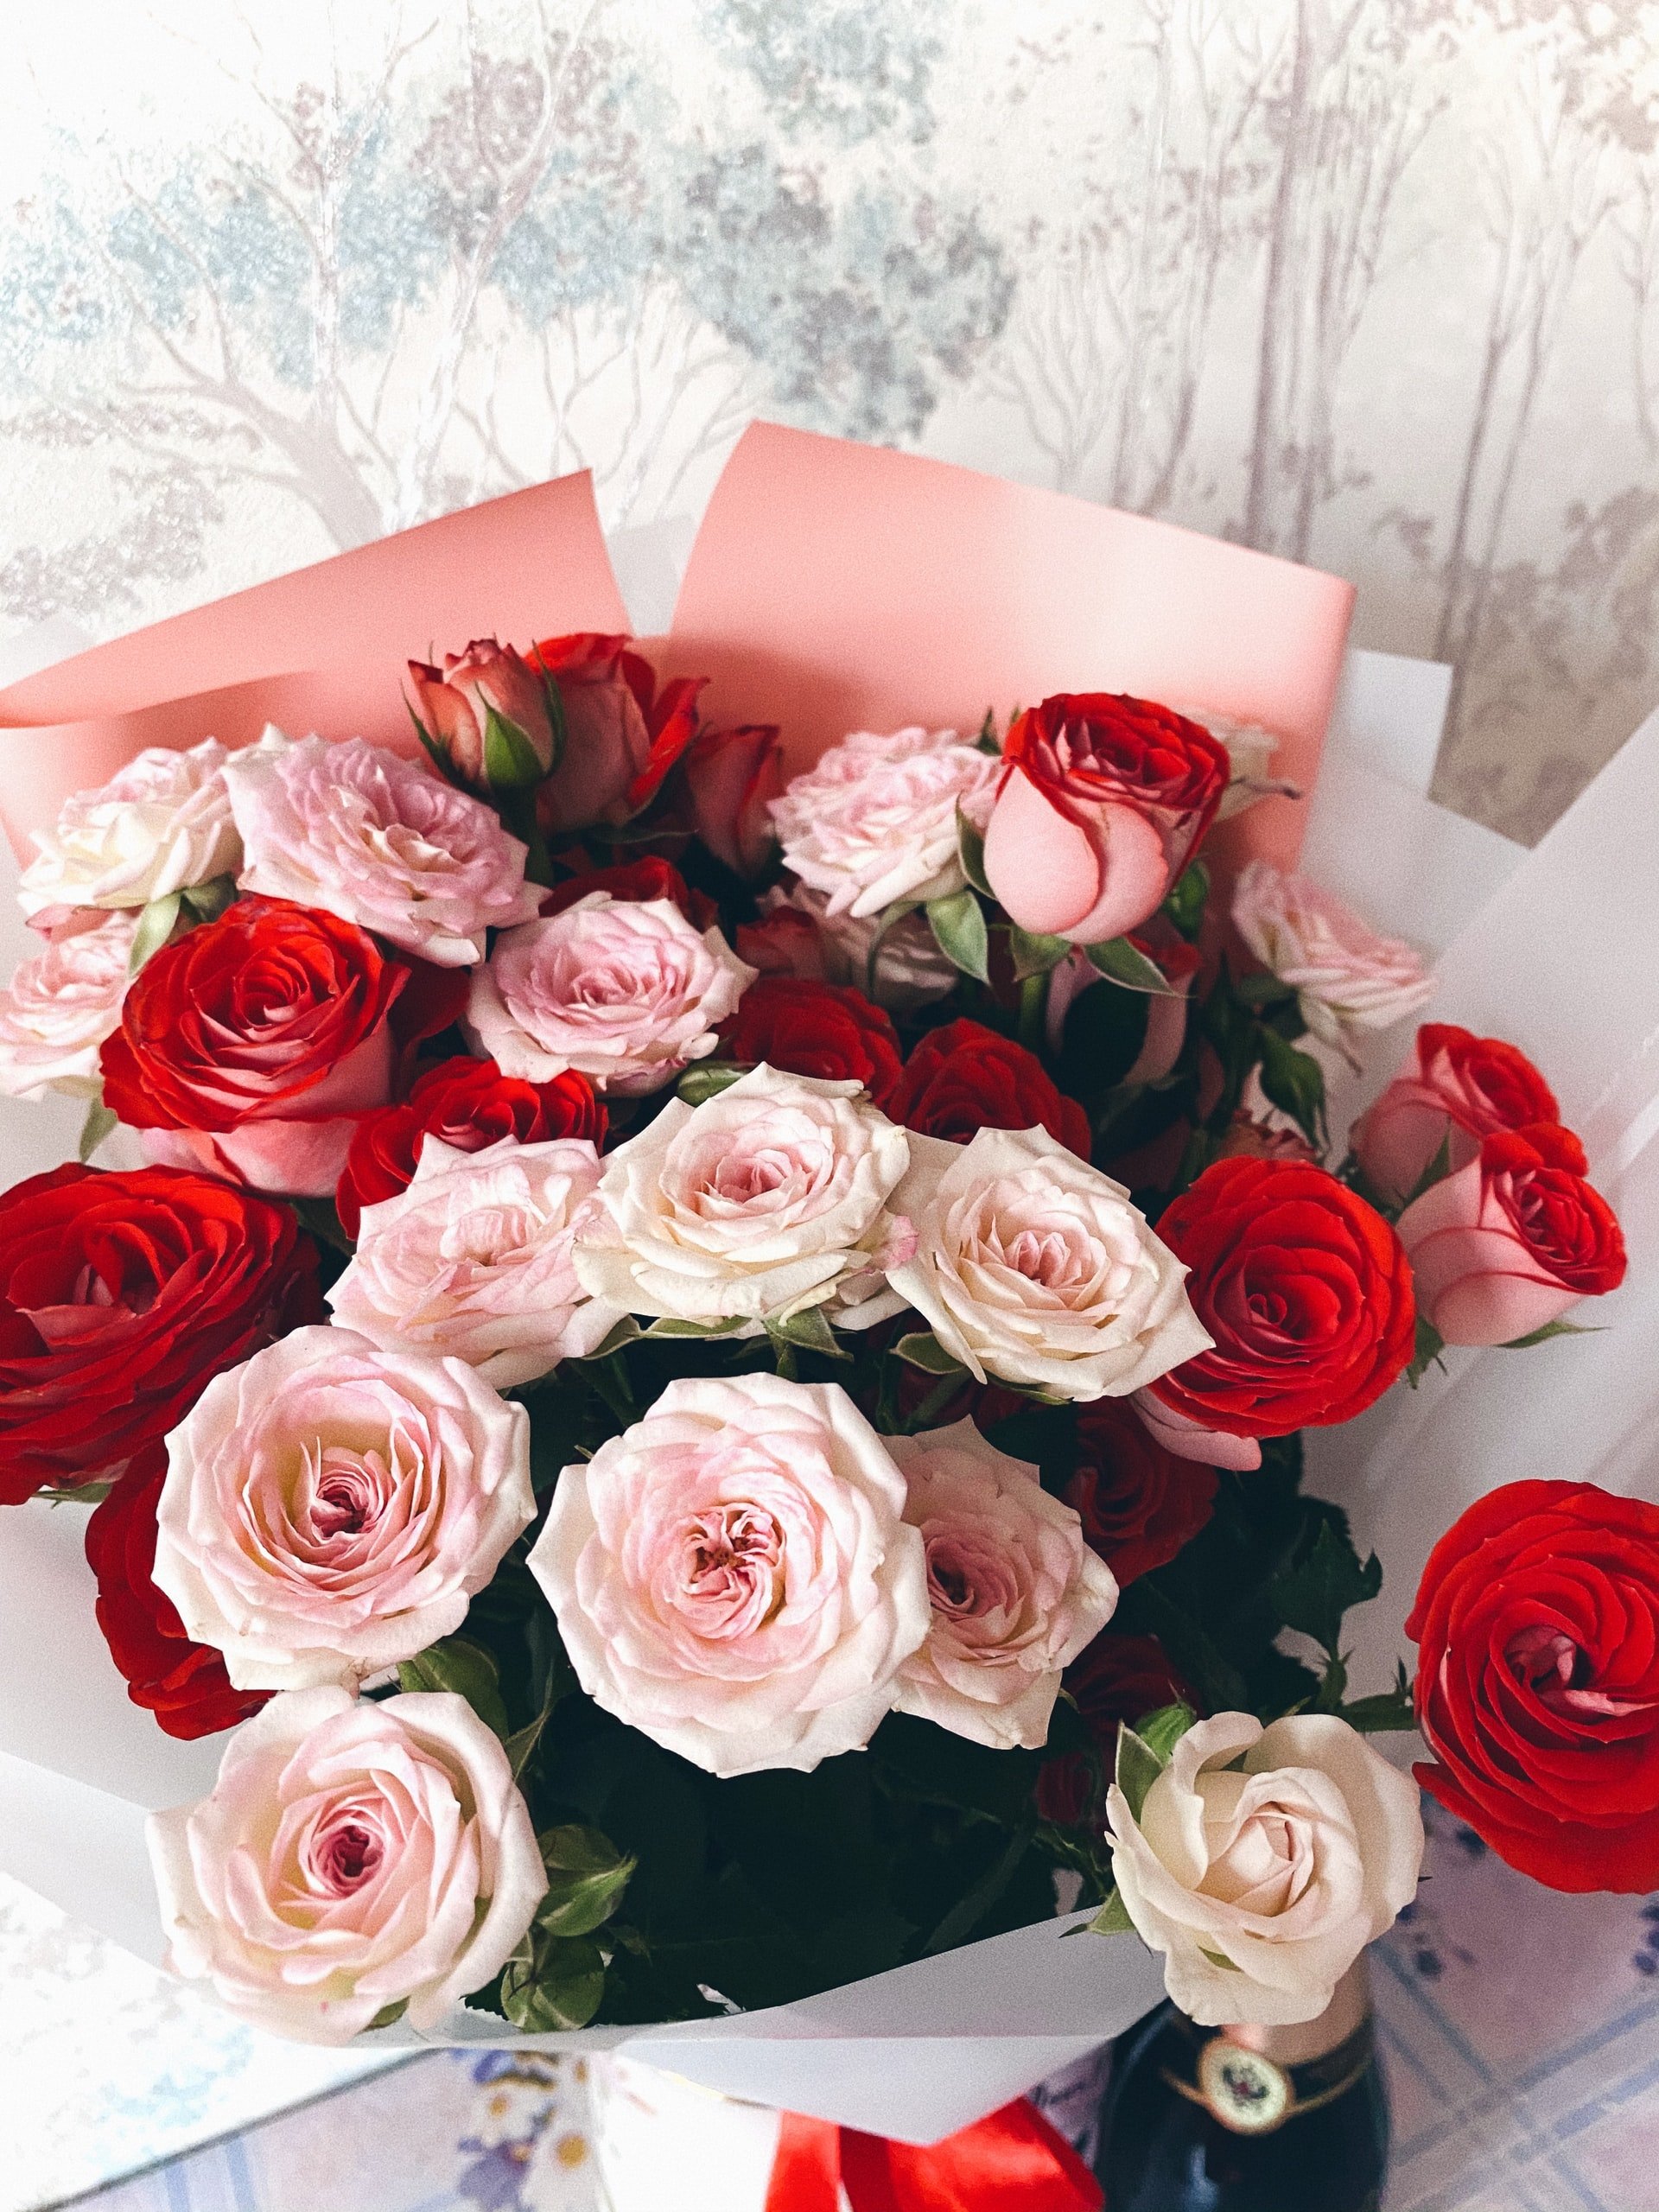 Blumenstrauß aus Rosen | Quelle: Unsplash